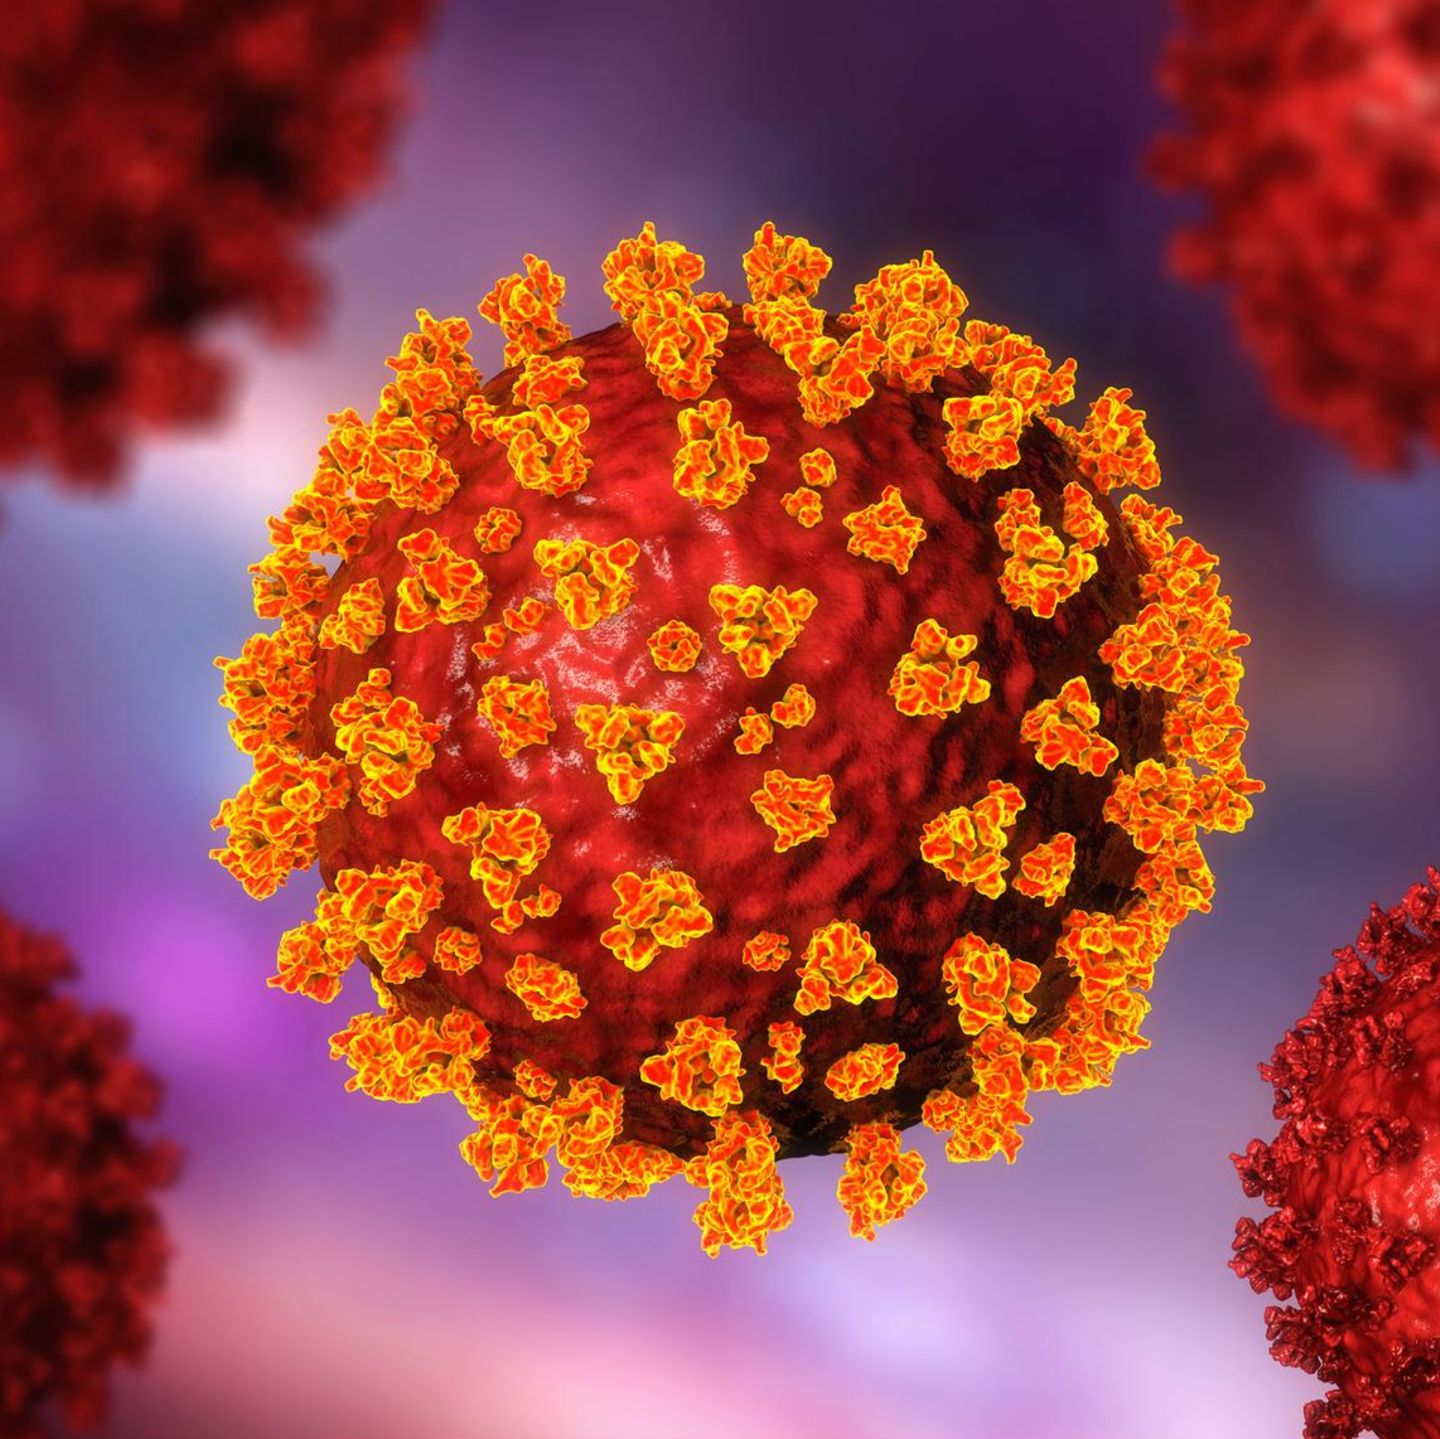 Das Coronavirus trägt zackenartige Proteine auf der Oberfläche. Dadurch kann es in menschliche Zellen eindringen und sich dort vermehren